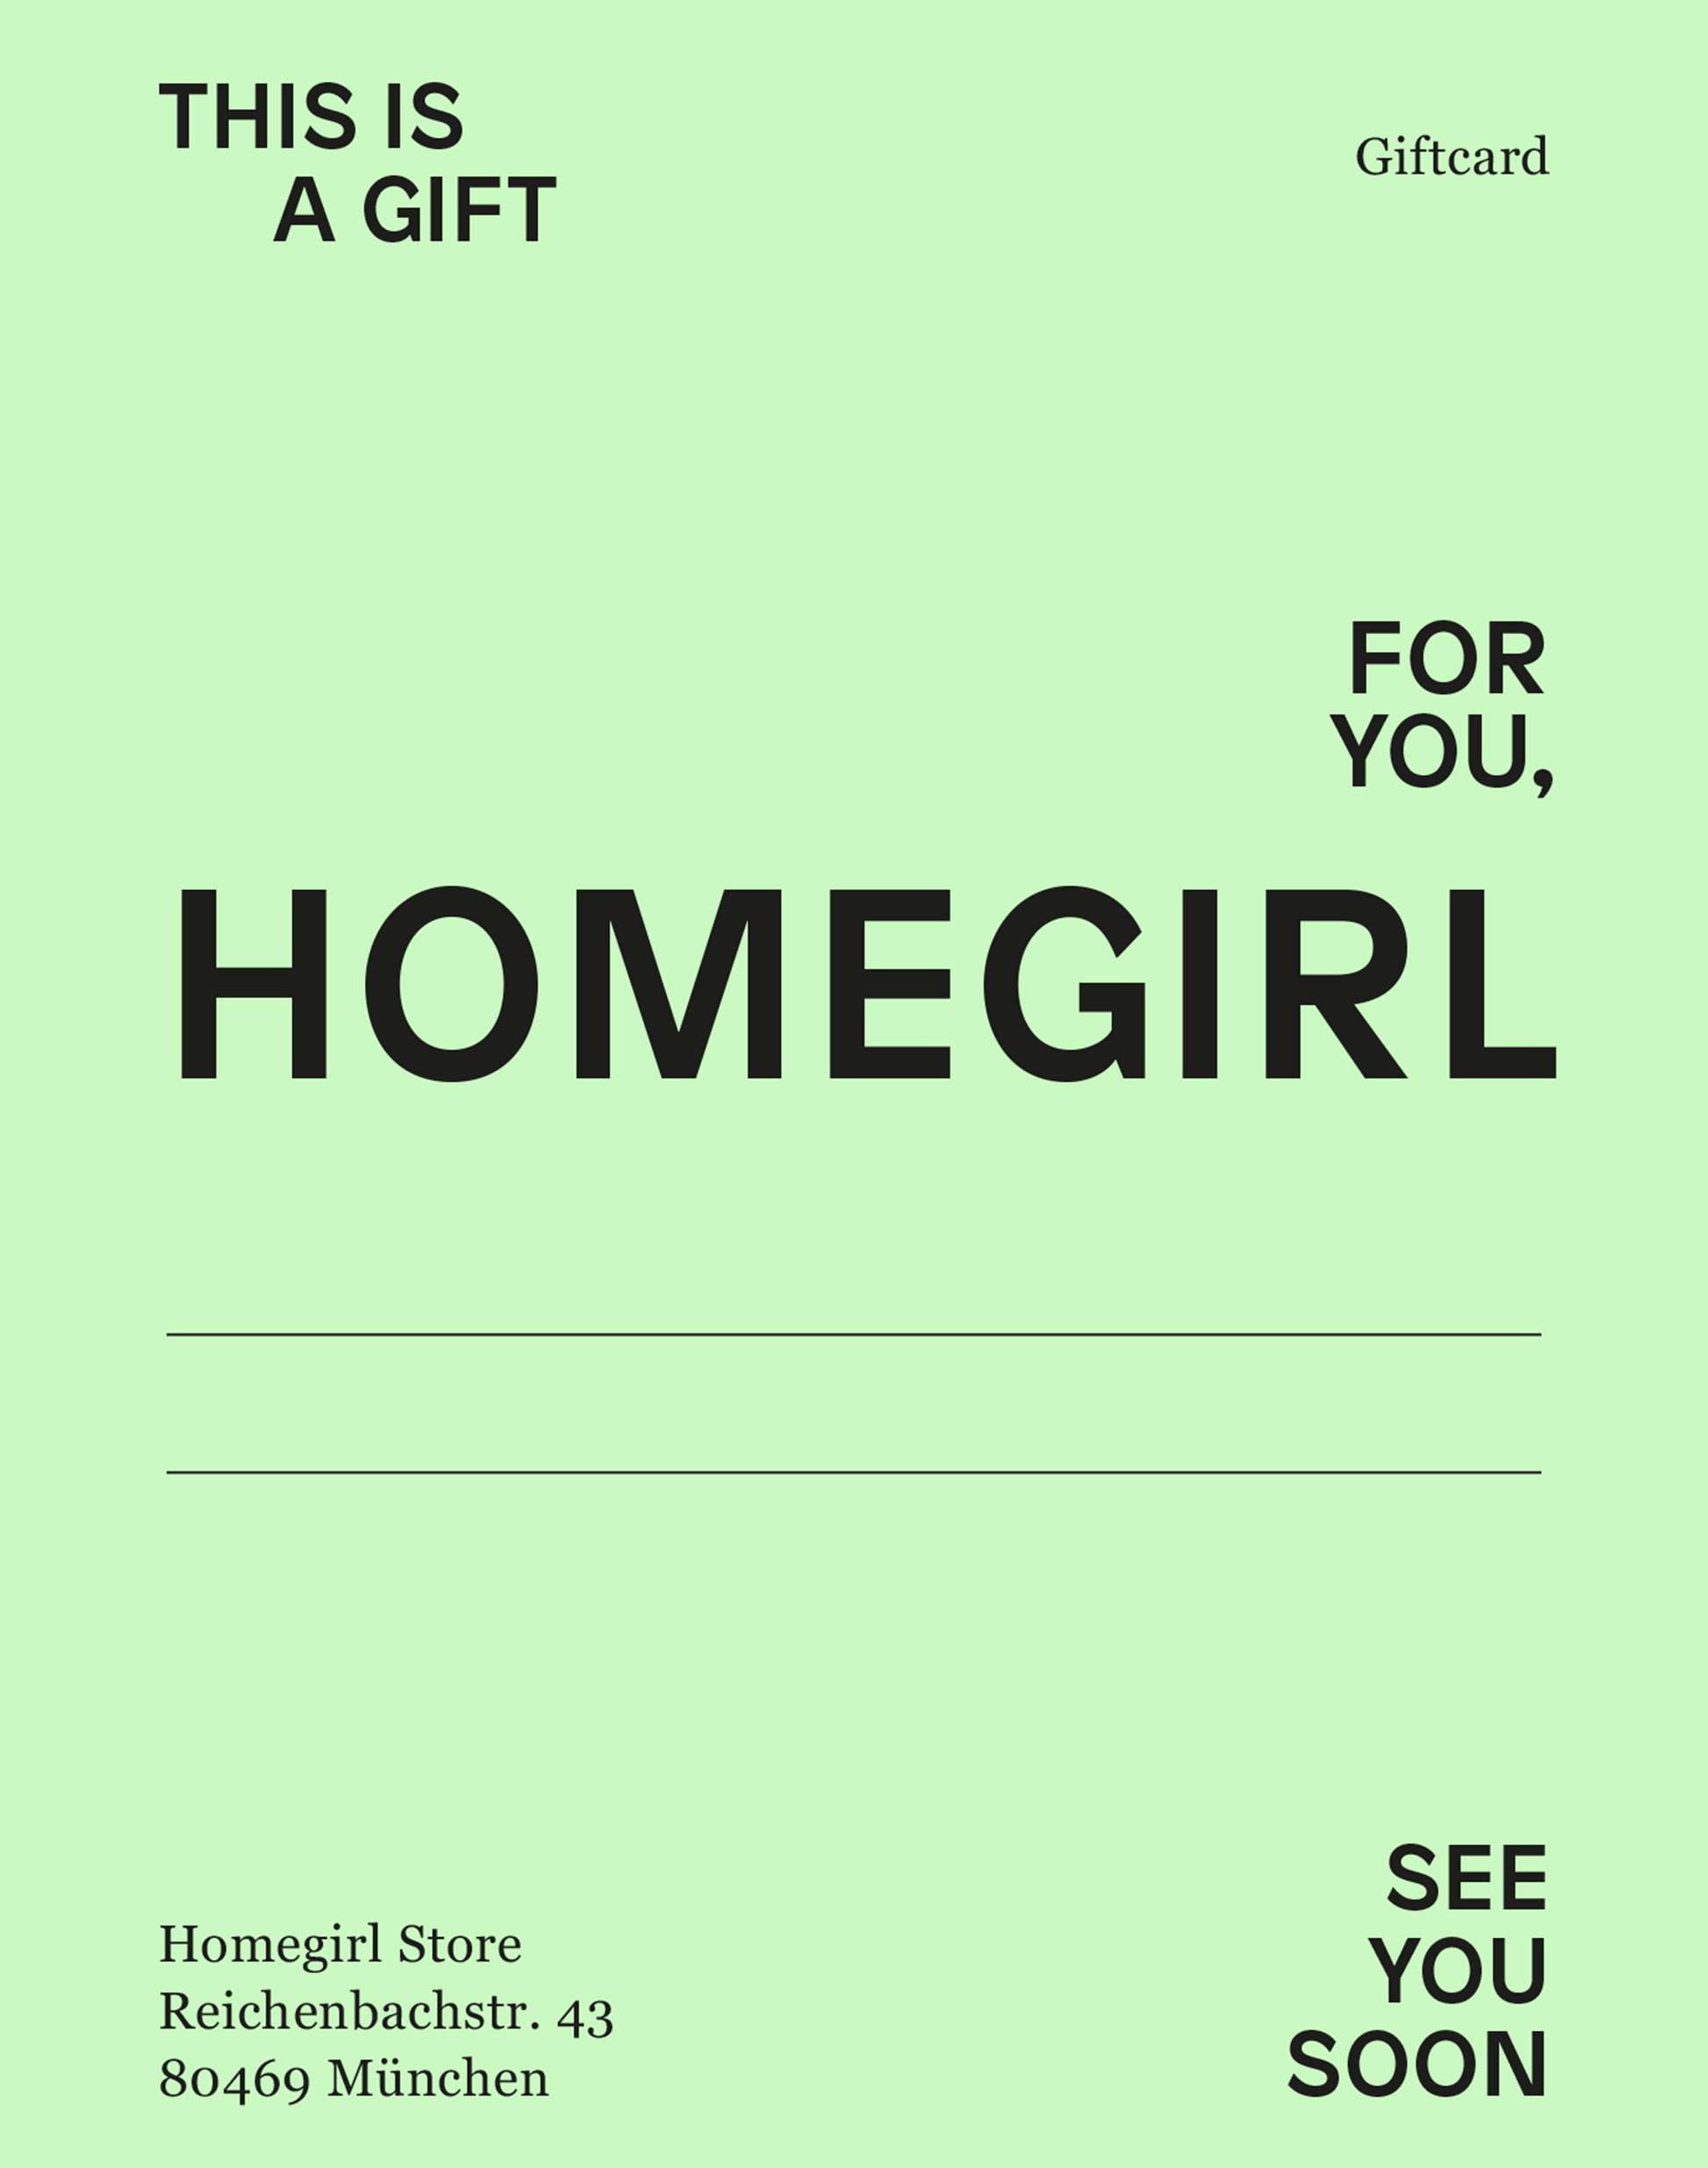 HOMEGIRLSTORE GIFT CARD